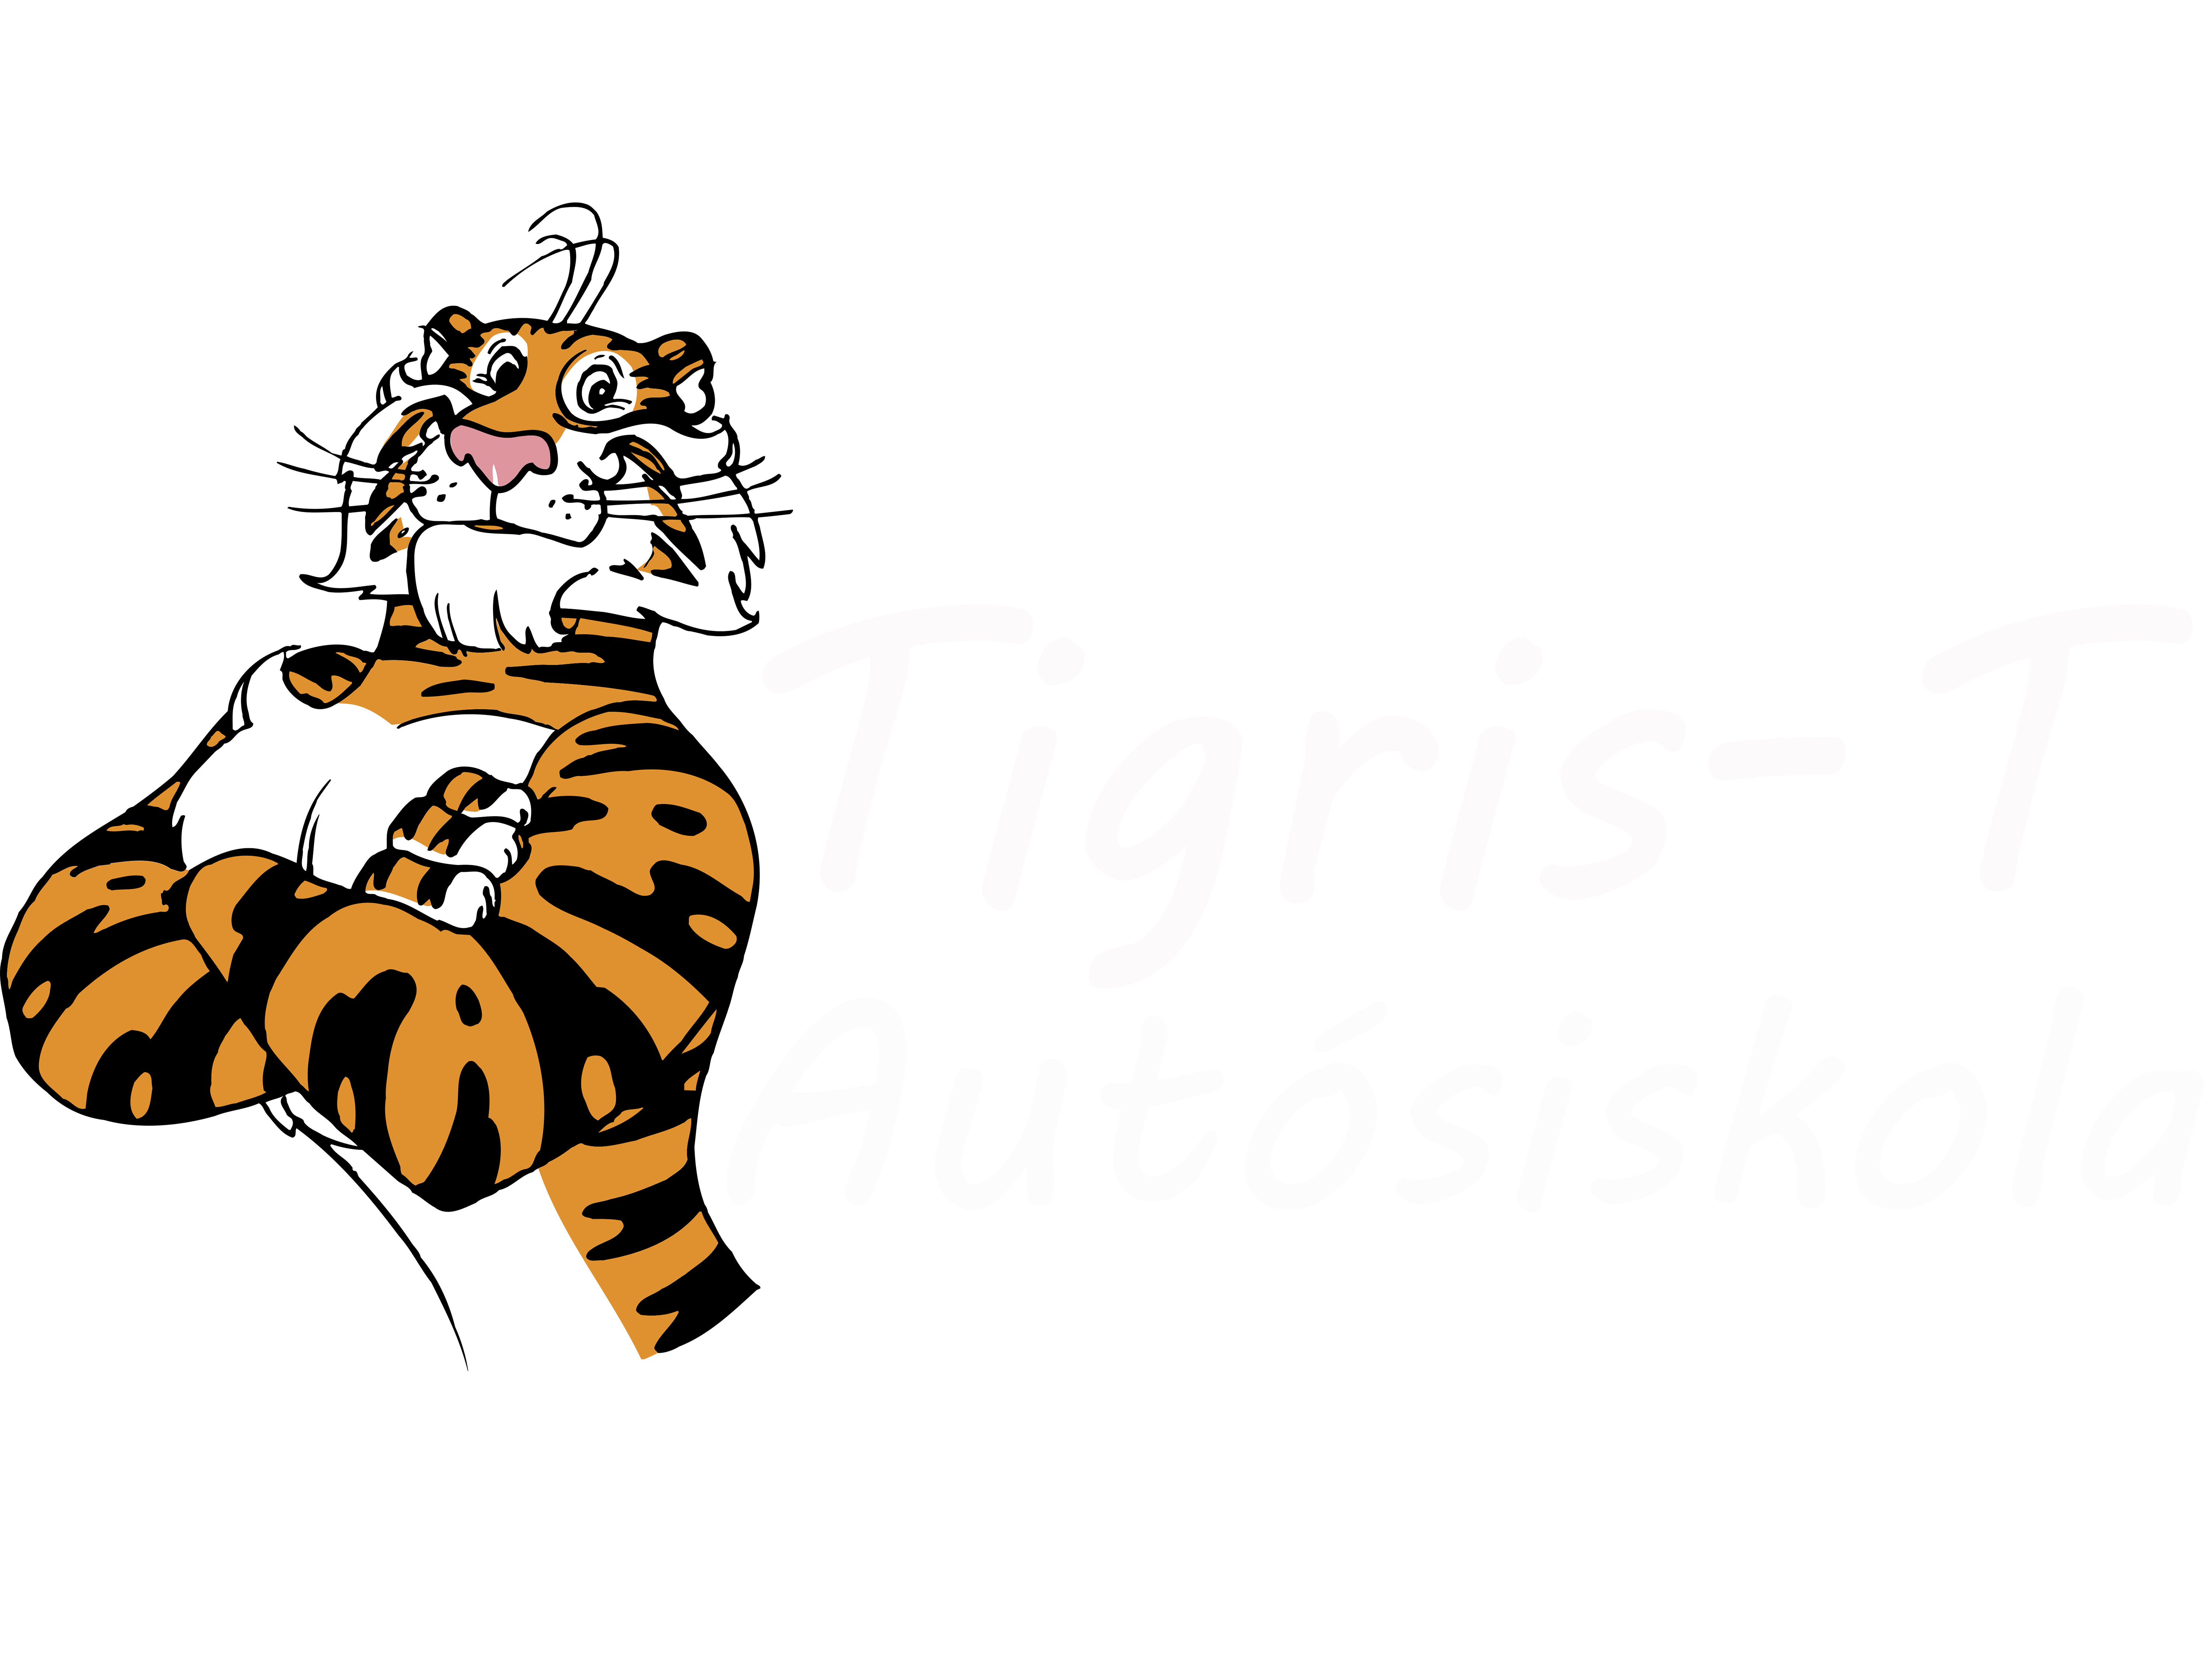 Tigris-t Autósiskola